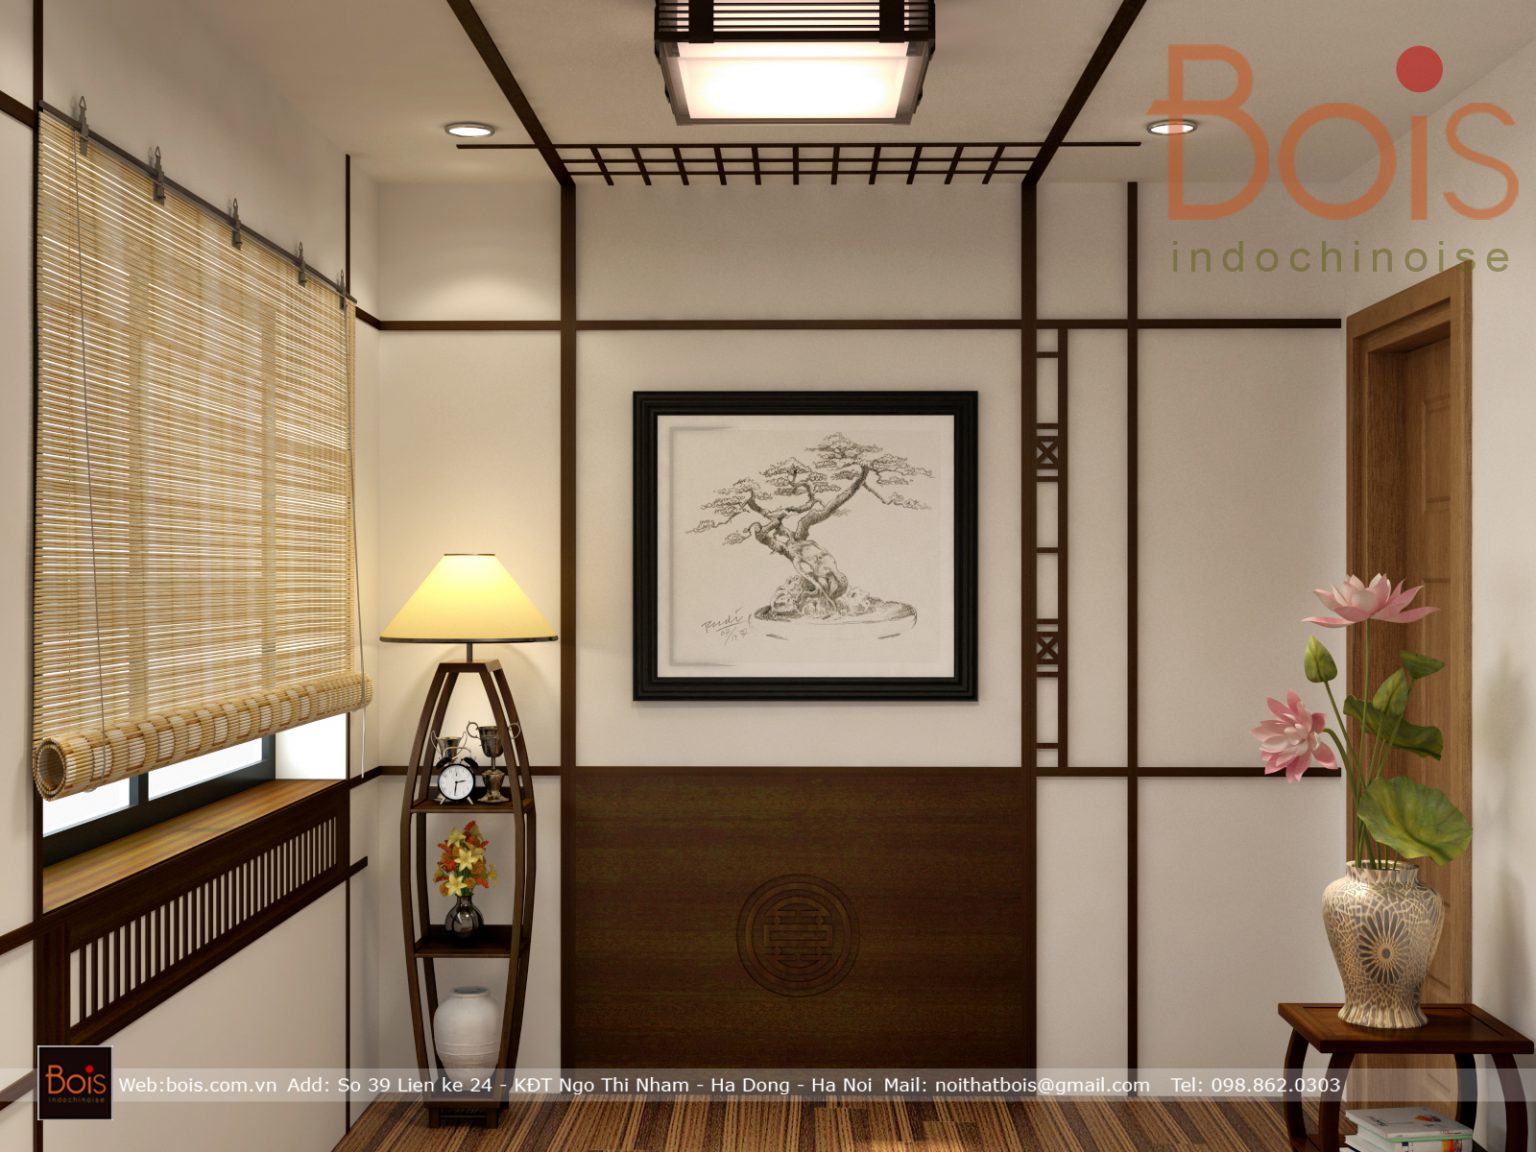 Phong cách Đông Dương Indochine hiện đại. Với những thông tin chi tiết về phong cách Indochine sẽ giúp bạn chọn lựa được phong cách thiết kế nội thất phù hợp.